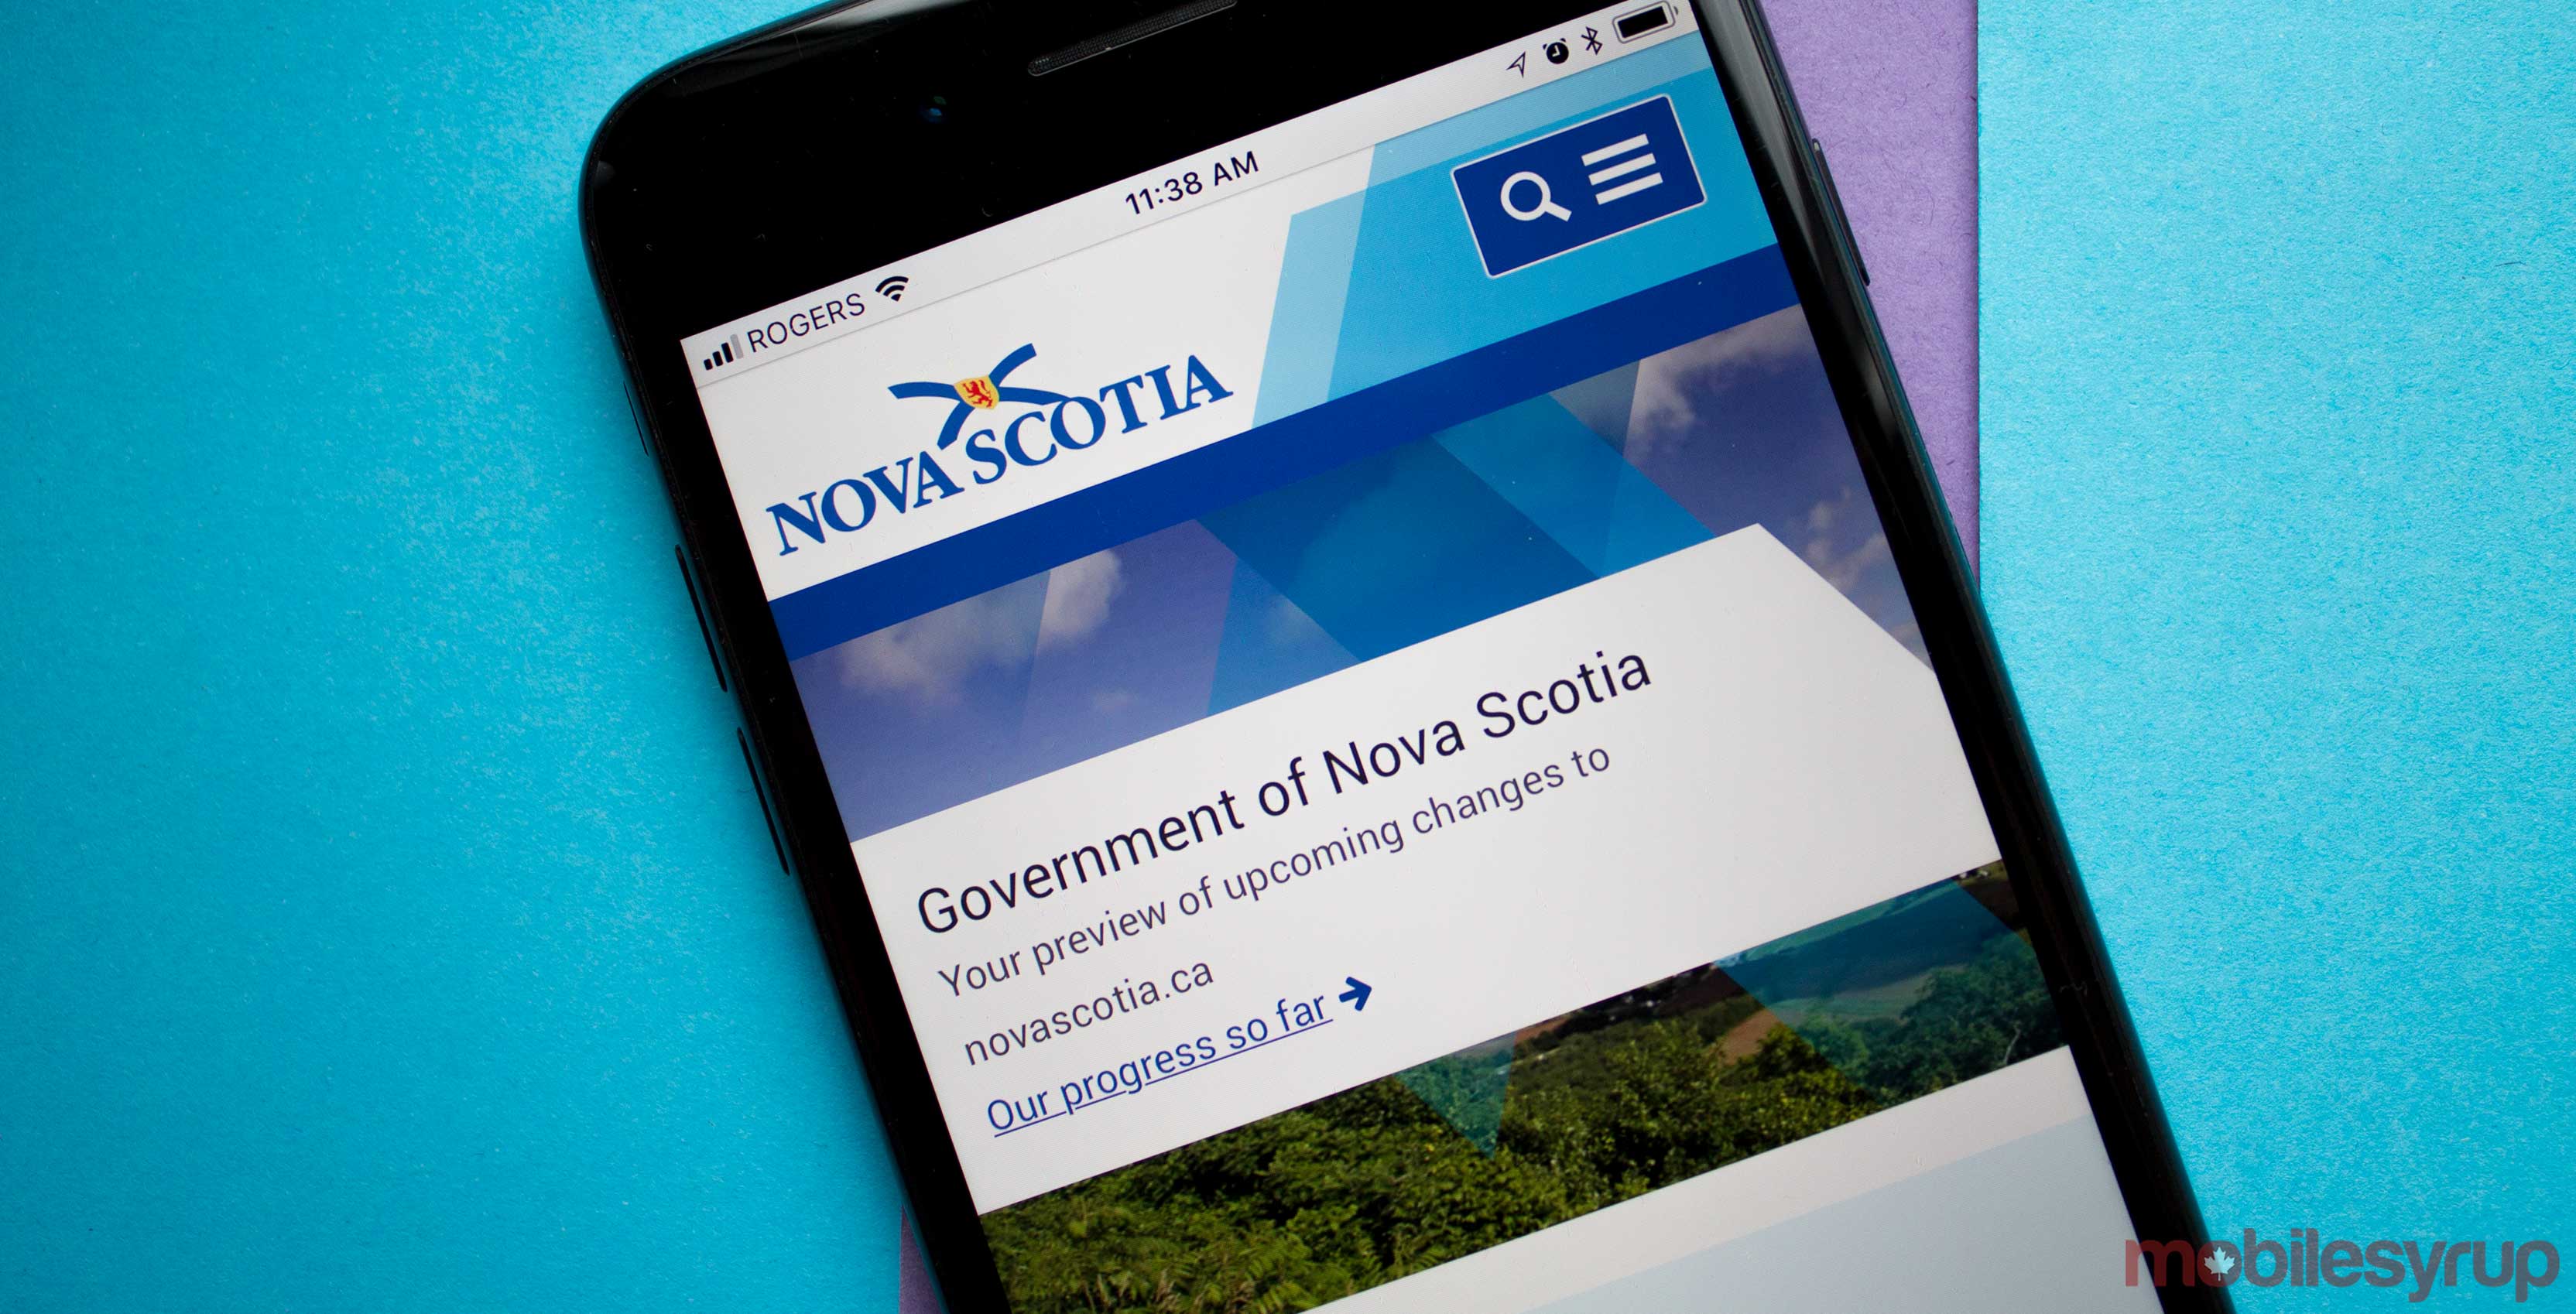 a photo of the government of nova scotia's website